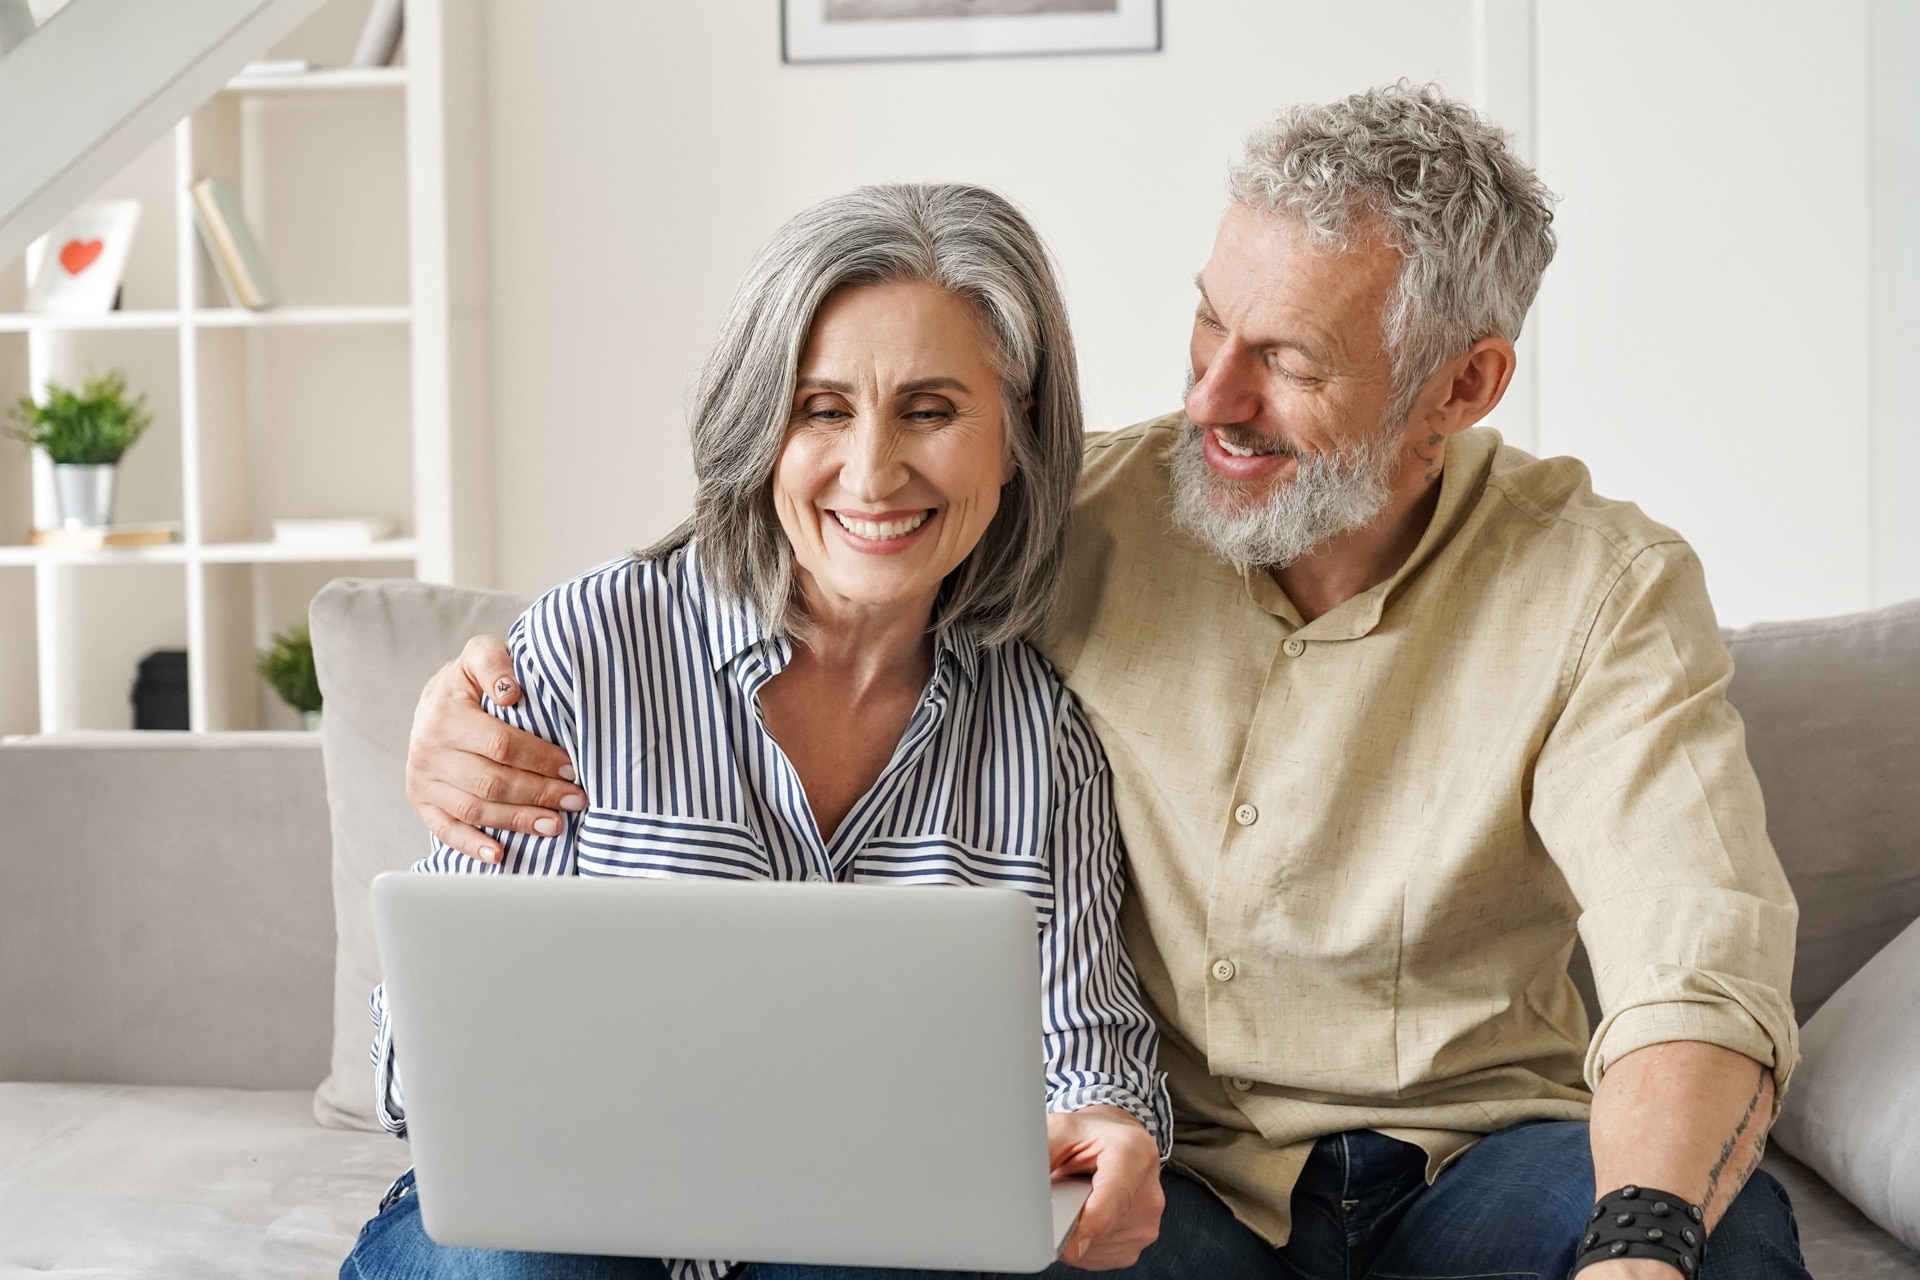 Felice coppia matura di mezza età che utilizza un computer portatile sul divano per fare acquisti online su un sito web. Uomo e donna anziani e sorridenti che guardano il computer mentre acquistano un'assicurazione e navigano in Internet a casa.